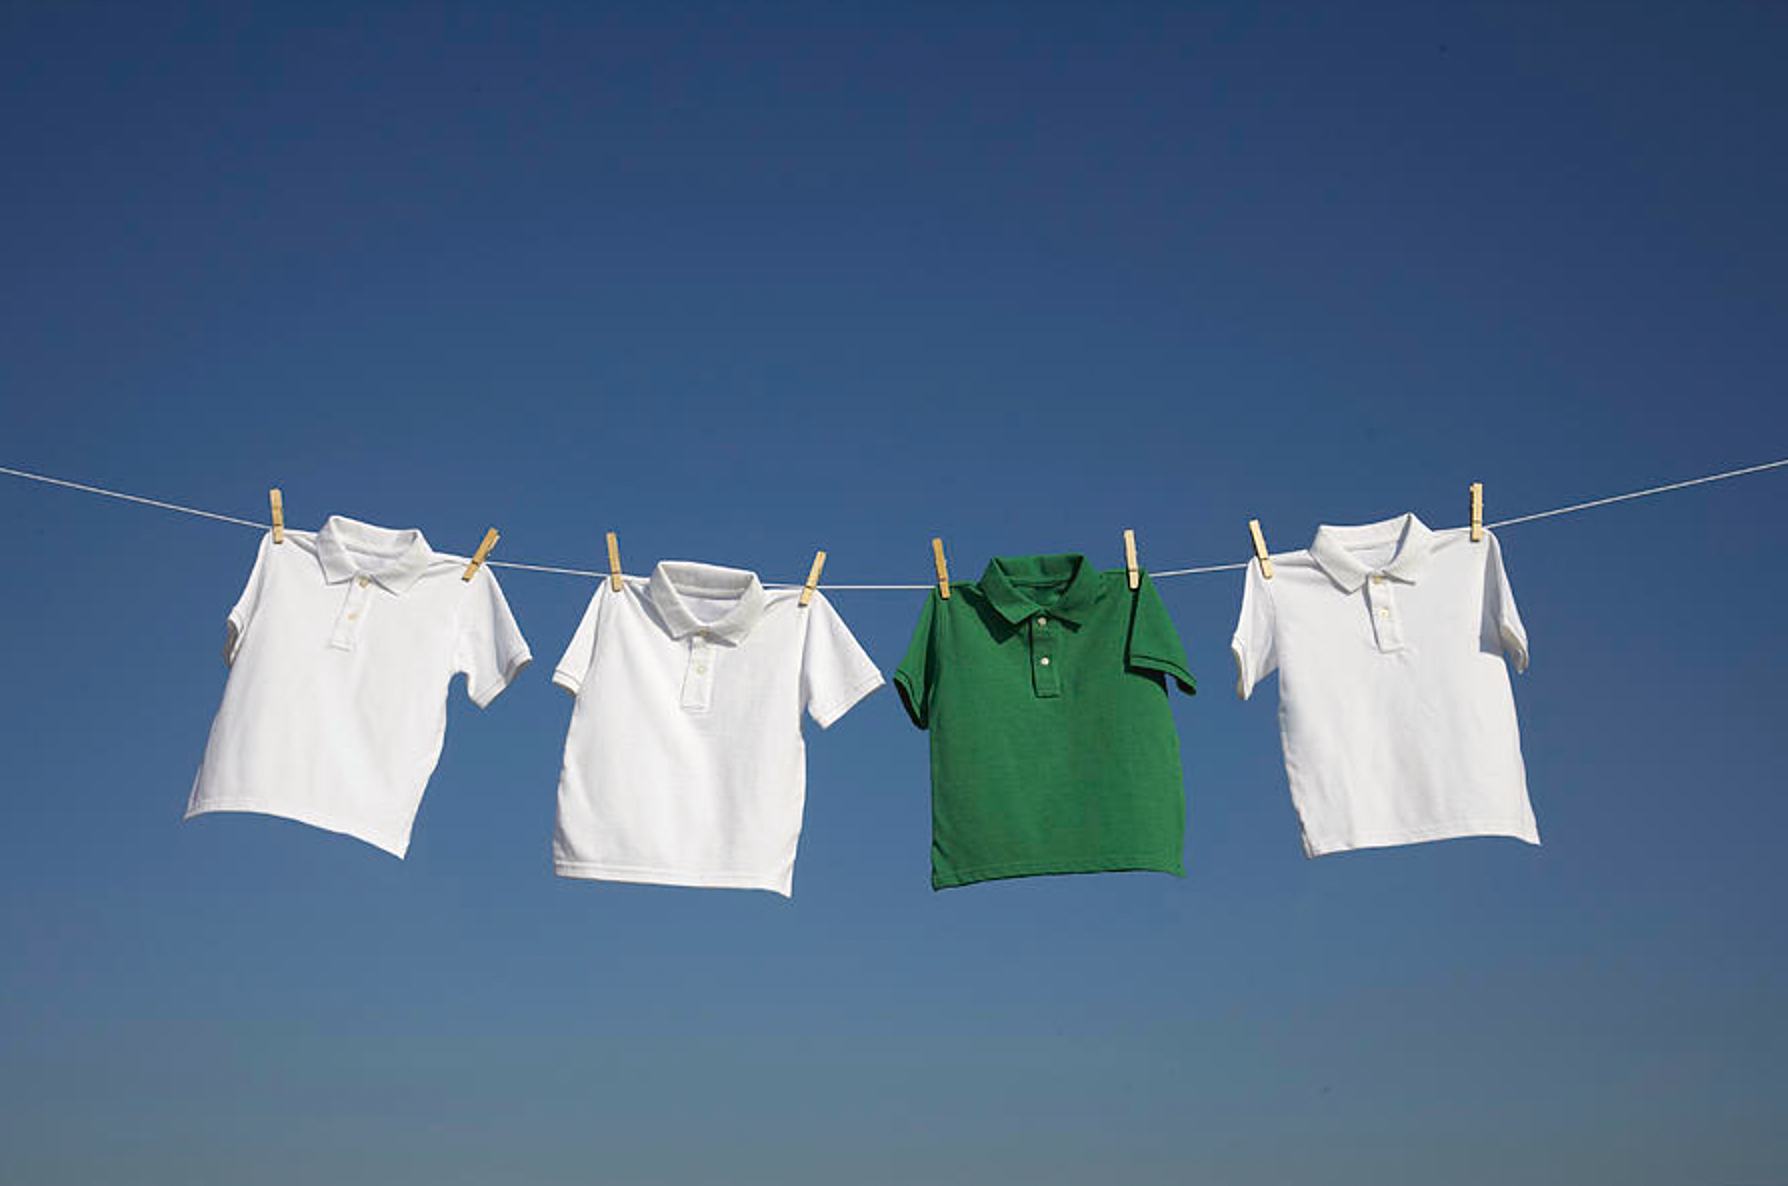 Hang line. The hang одежда. Washed t Shirt. Белое бельё t-Shirt. Washing t-Shirt.